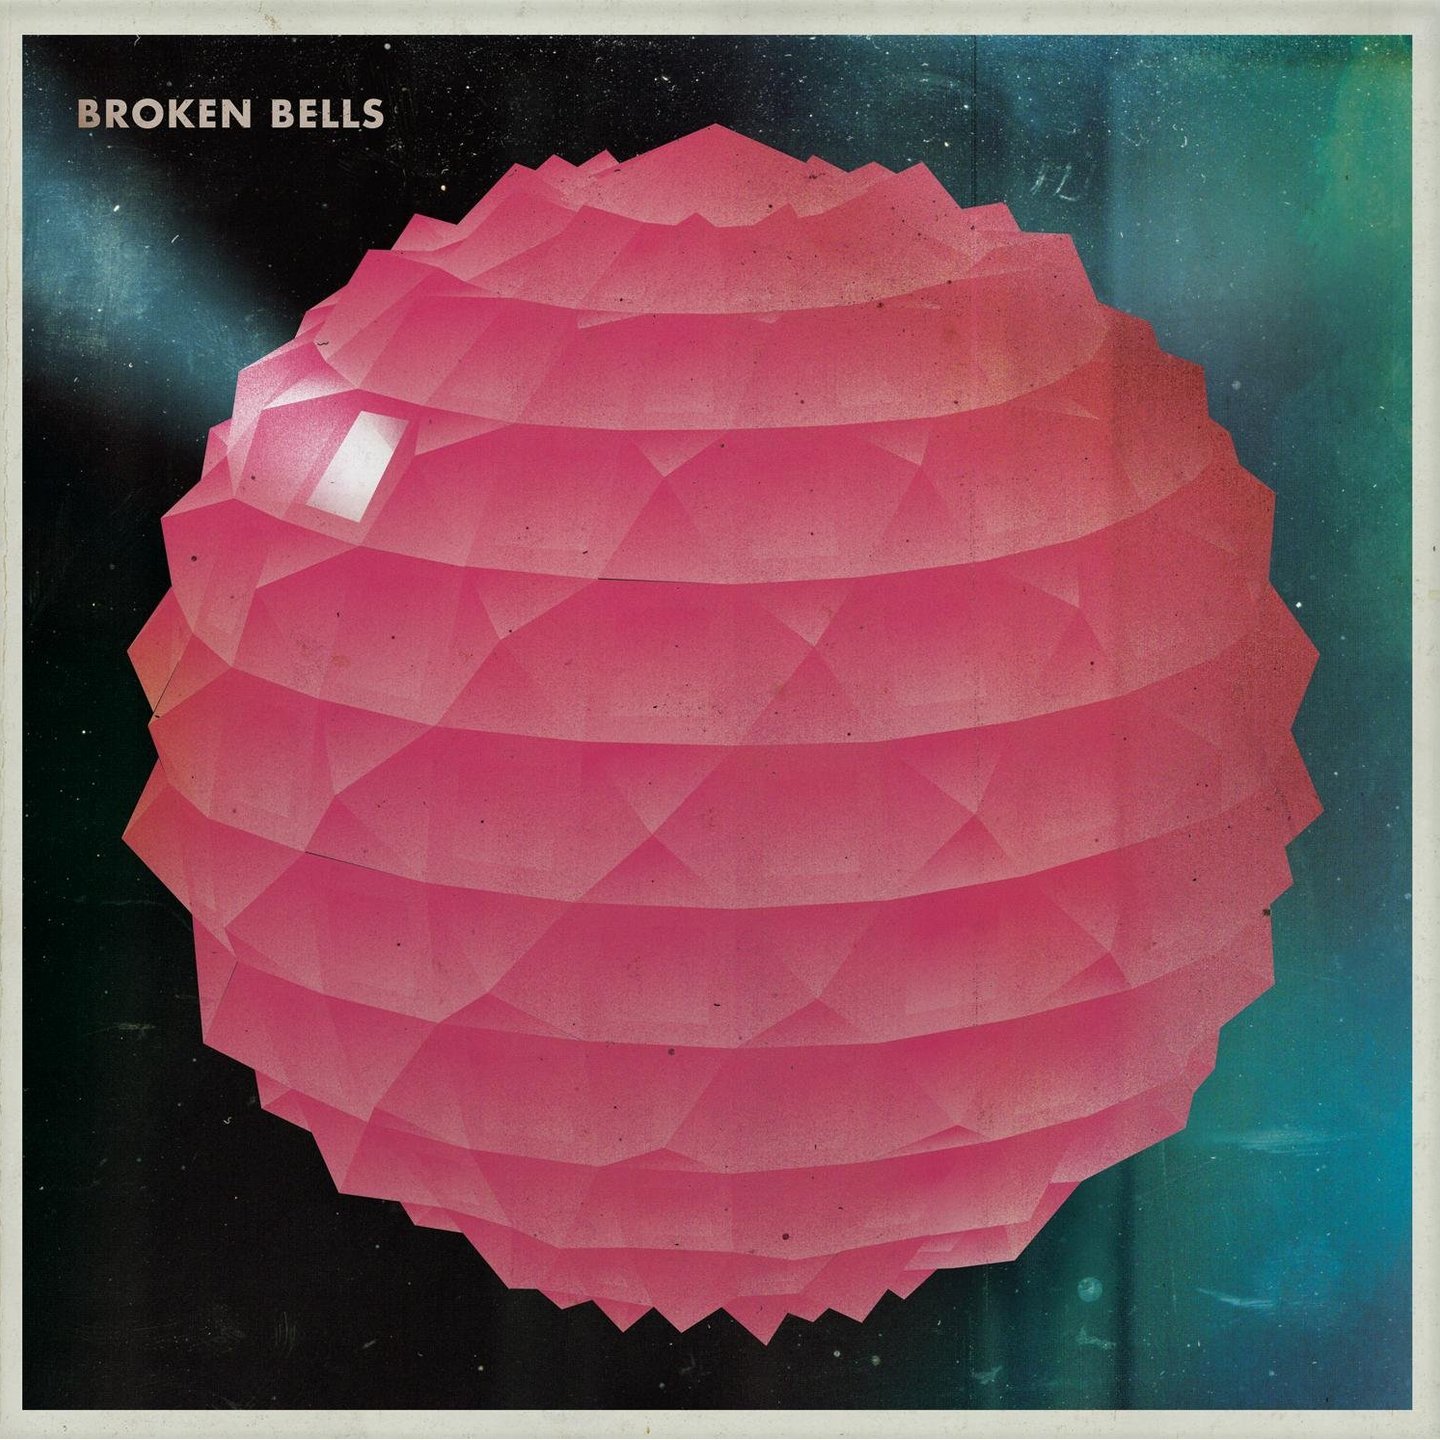 BROKEN BELLS - Self-Titled LP 180g